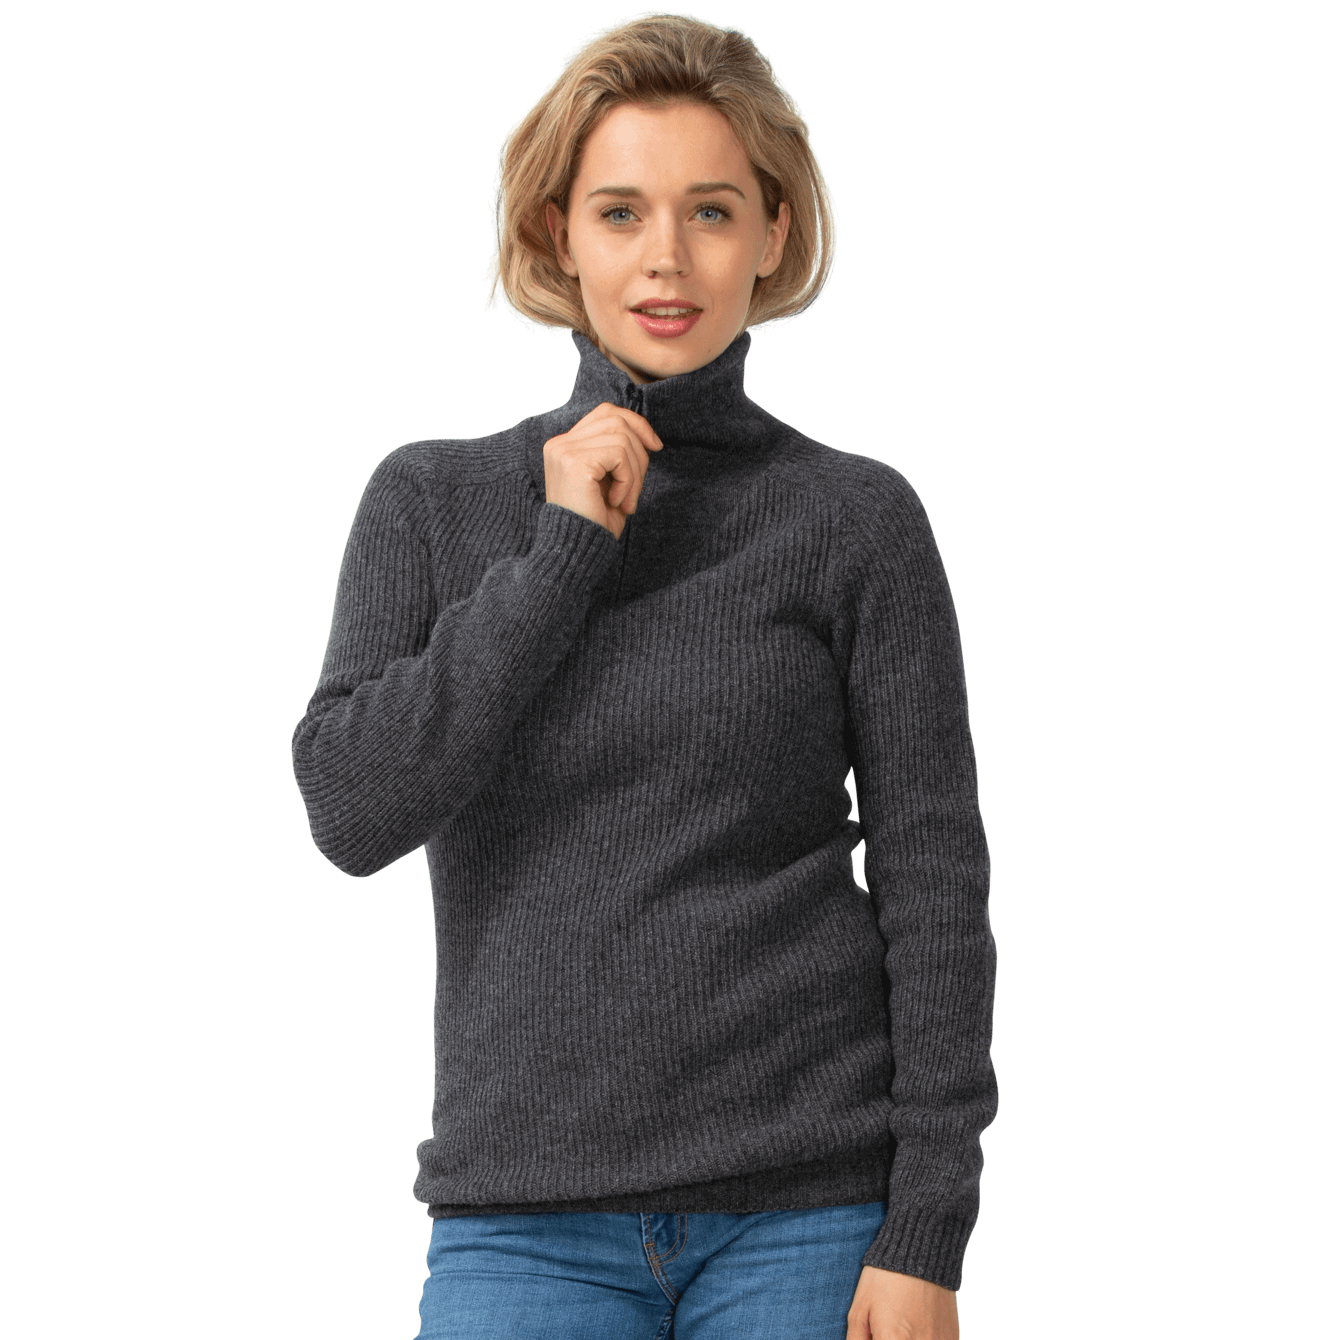 Merino.tech Camiseta de lana merino para hombre, 100% lana merina orgánica,  capa base ligera + calcetines de lana de senderismo